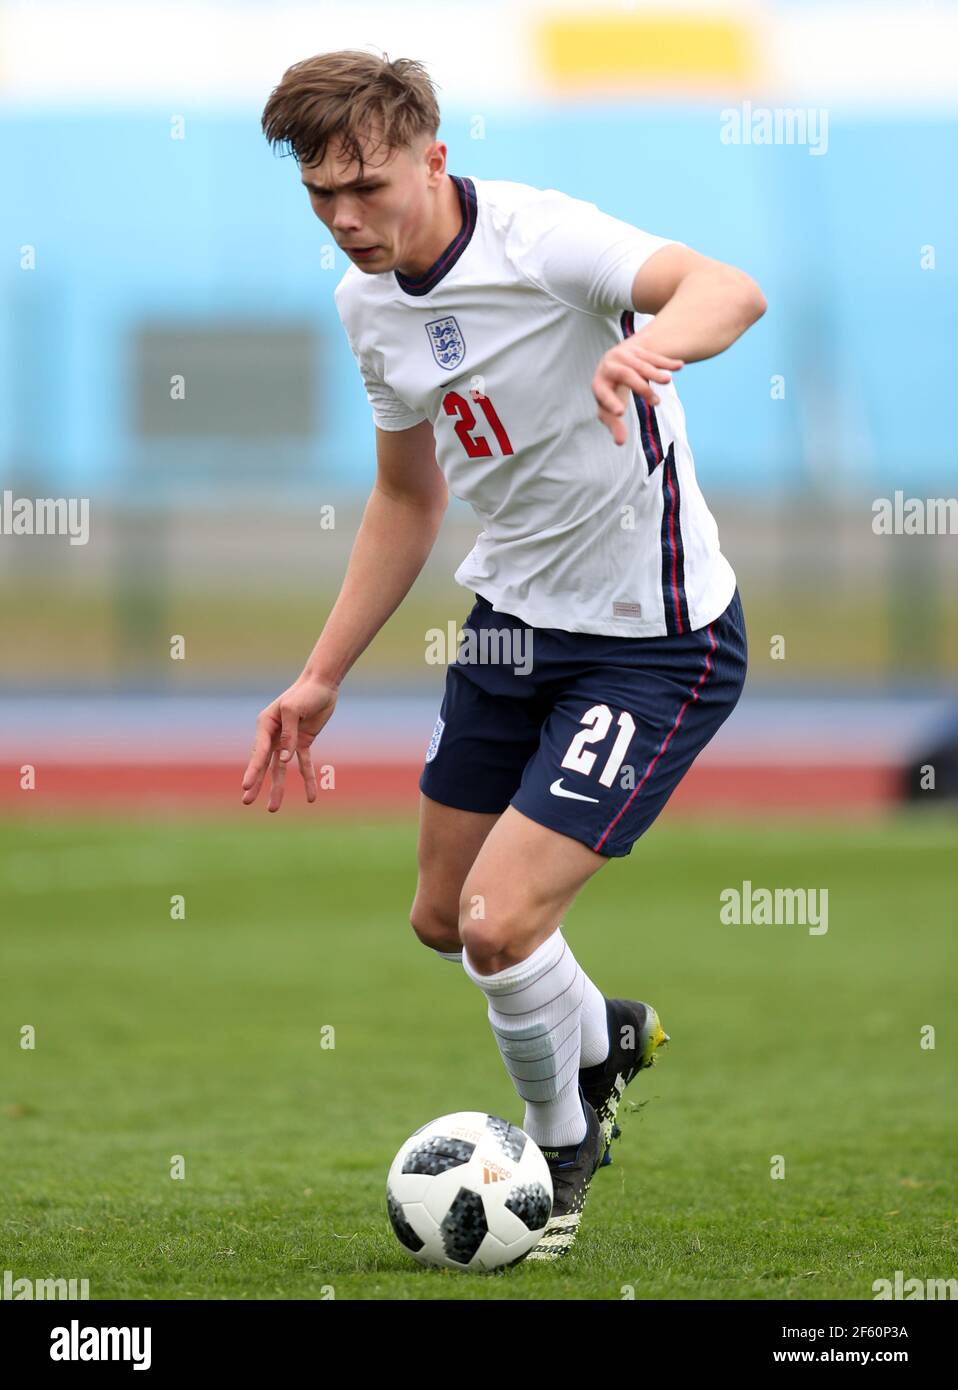 Callum Doyle de Inglaterra durante el partido amistoso internacional sub-18 en el estadio Leckwith, Cardiff. Fecha del cuadro: Lunes 29 de marzo de 2021. Foto de stock